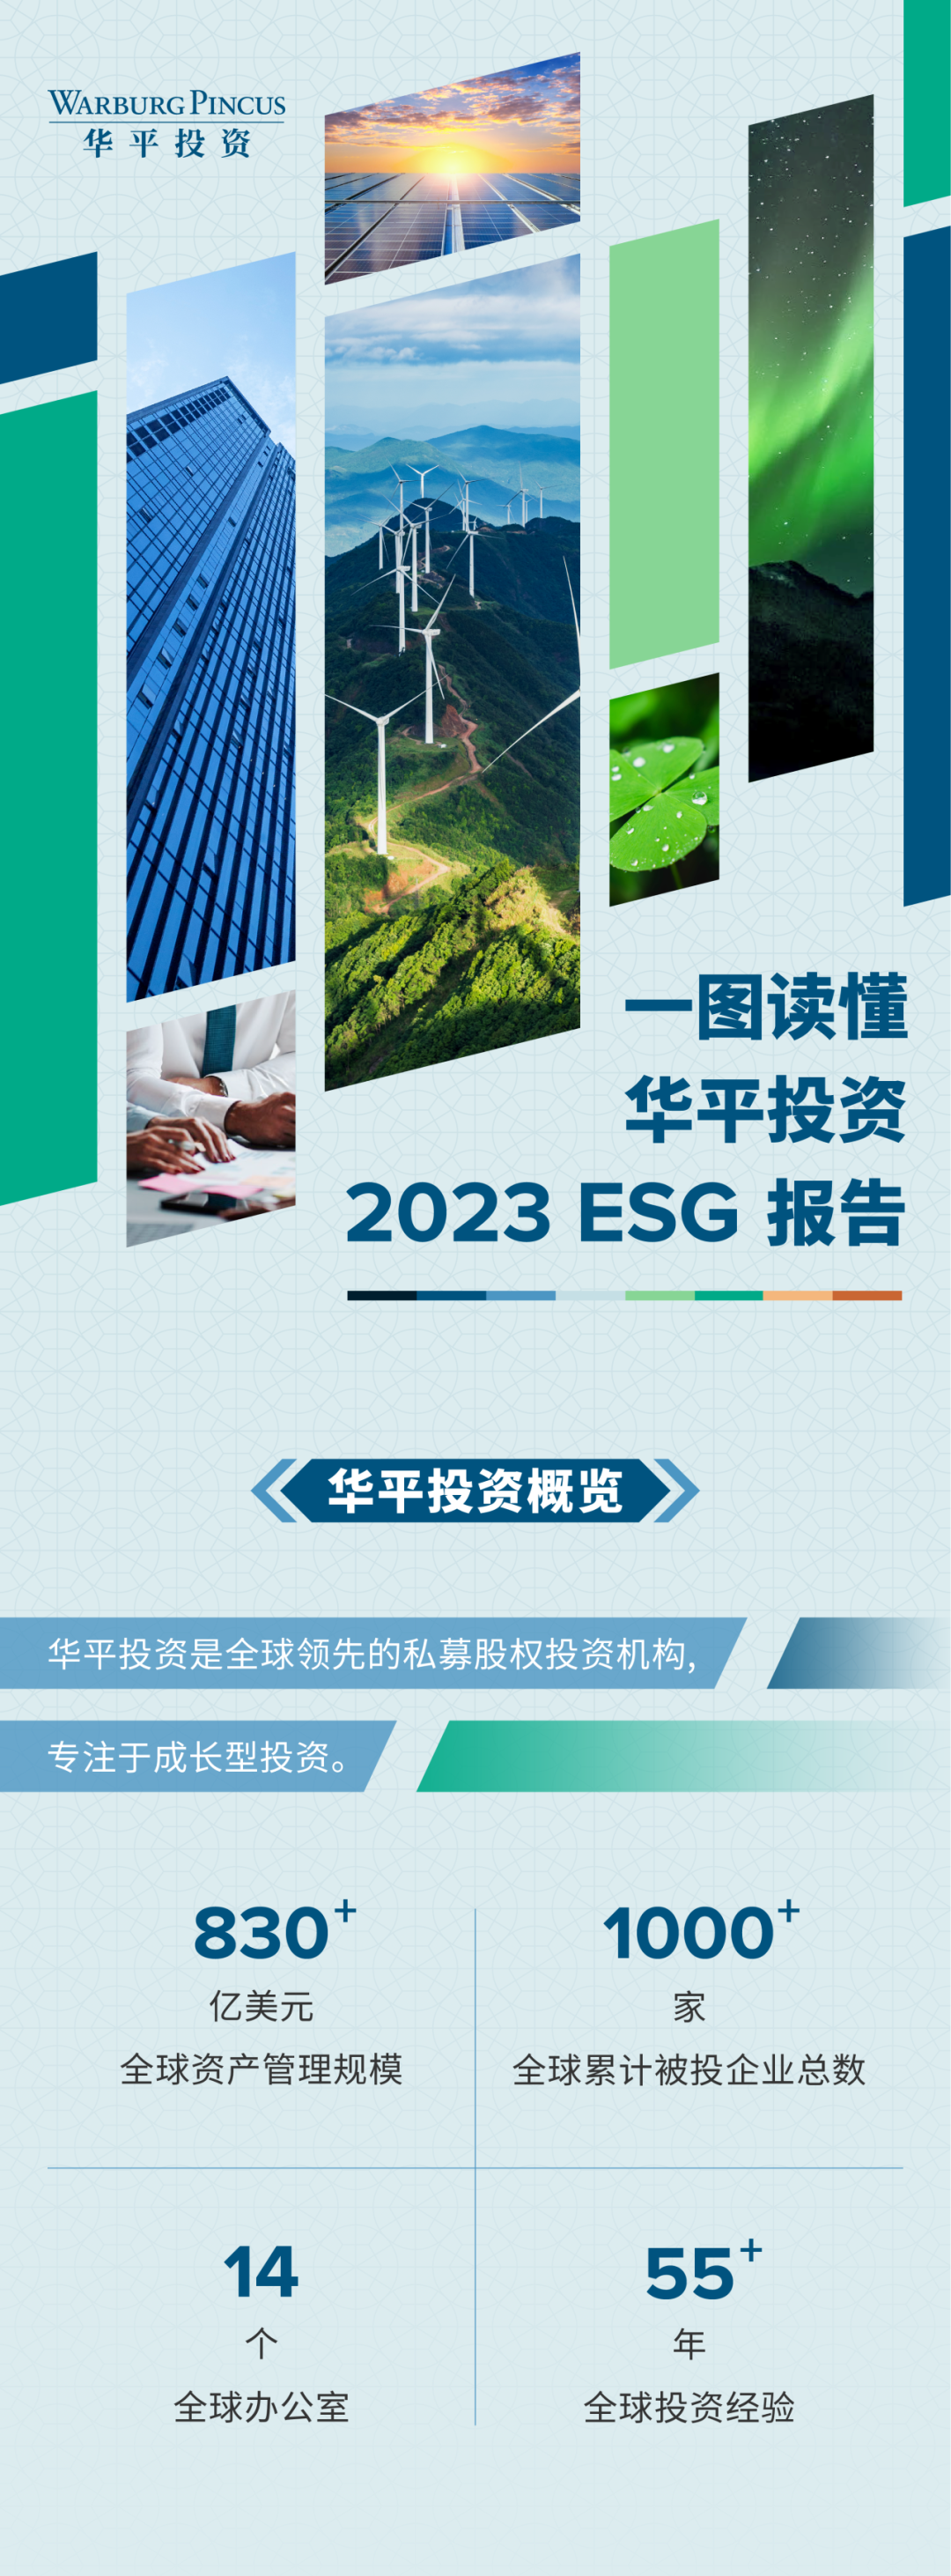 一图读懂《华平投资2023 ESG报告》